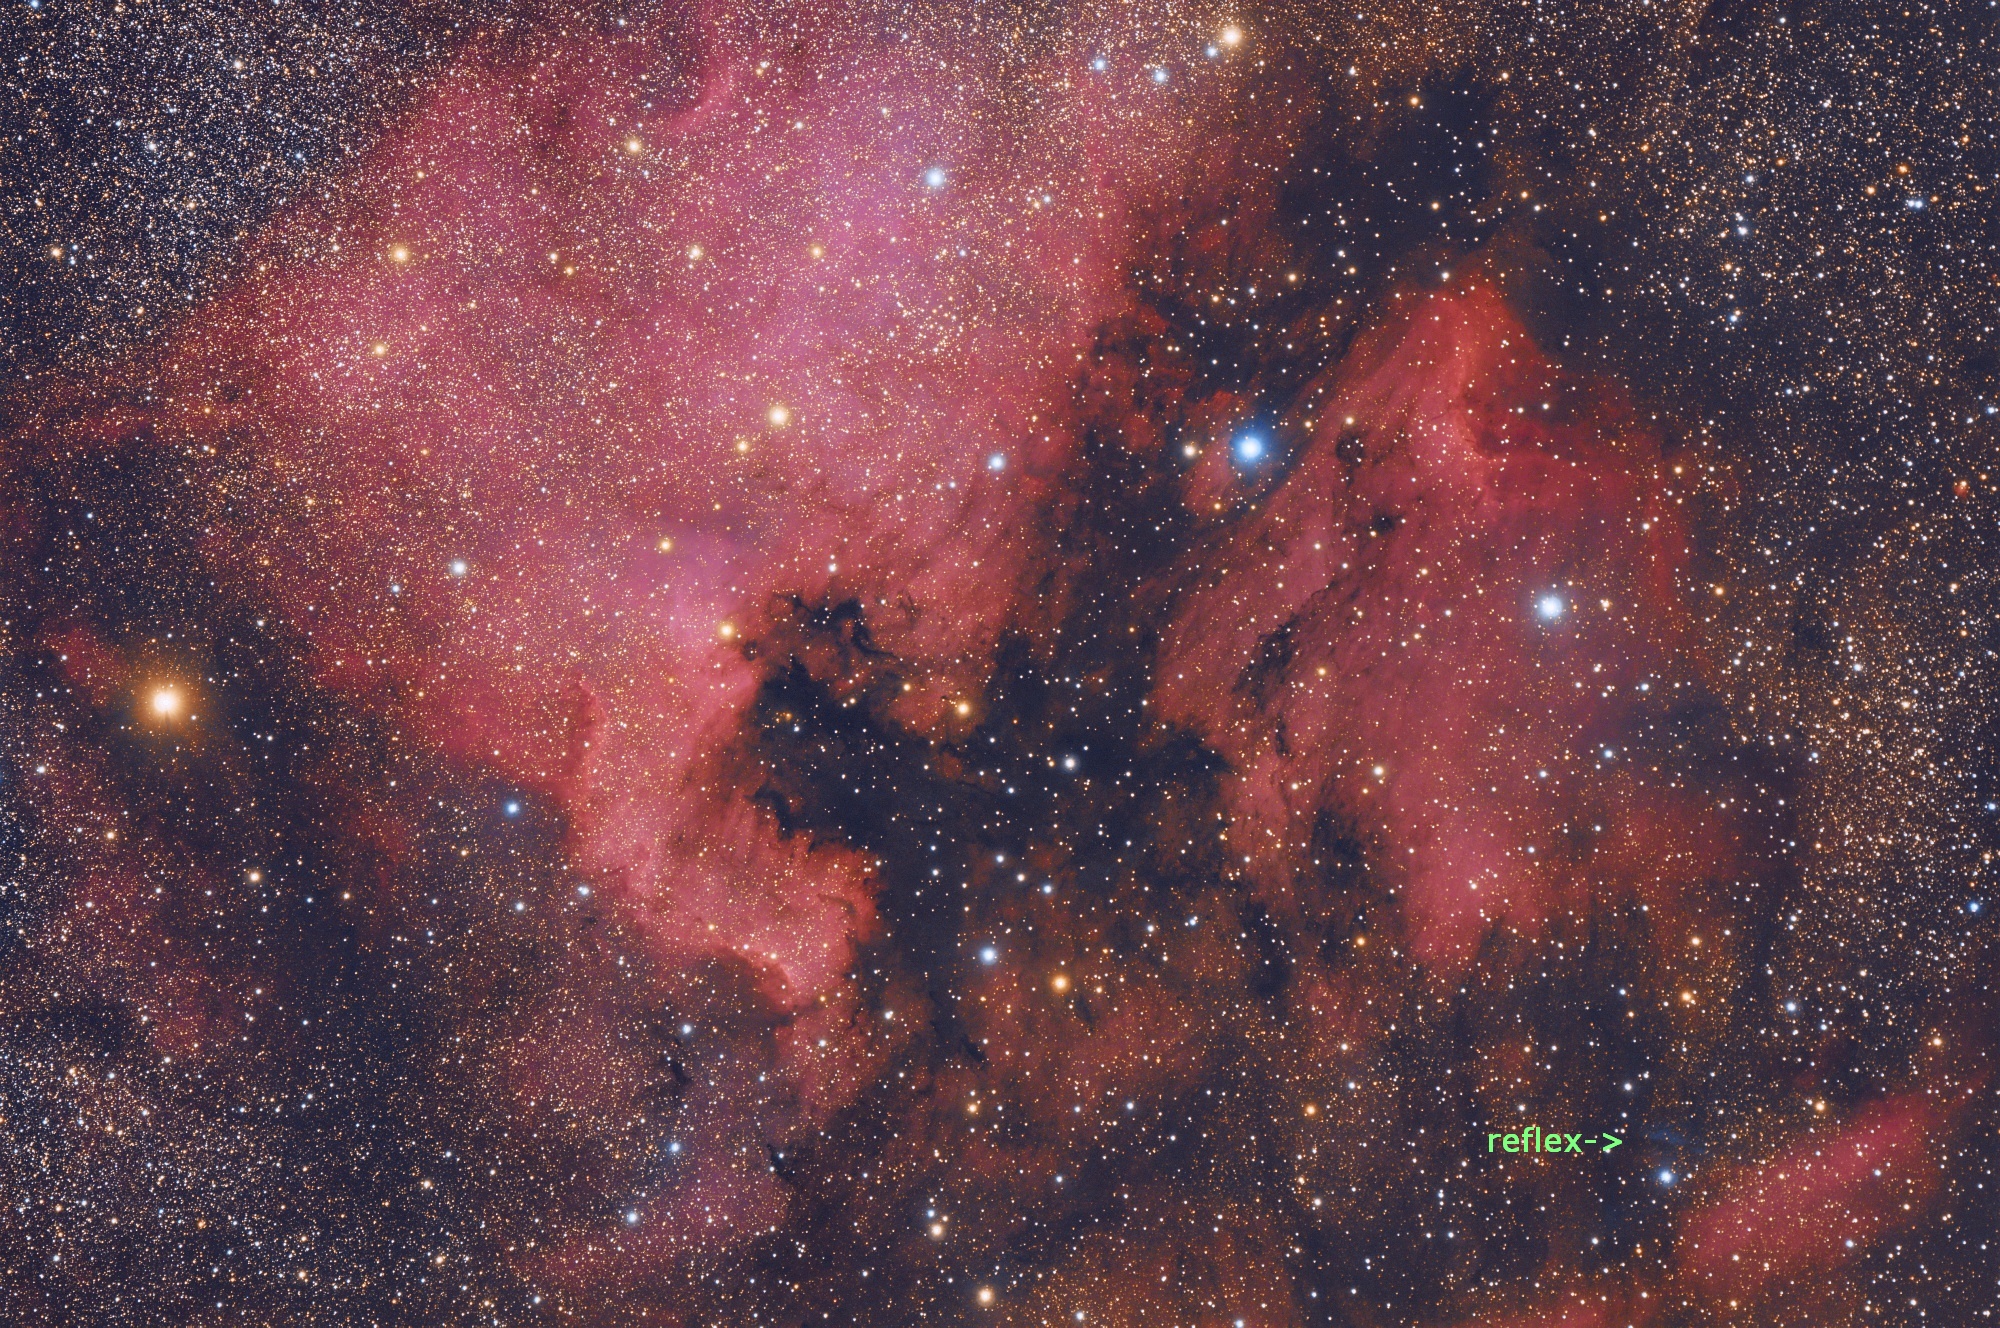 20190831 NGC7000 Kowa350 ASI071 140x120s reflex.jpg